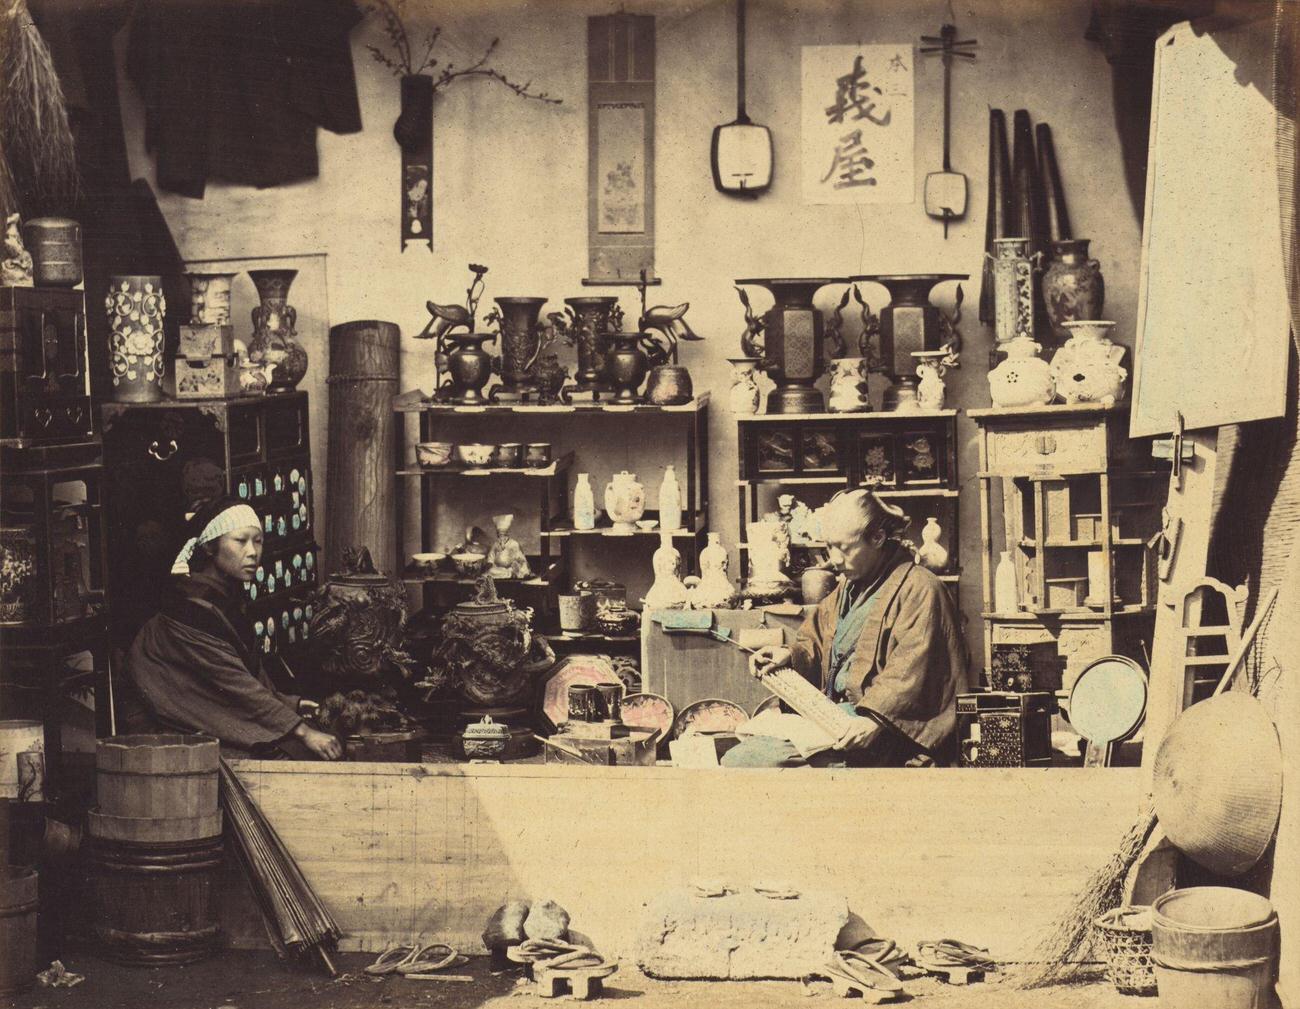 Curio Shop, circa 1865